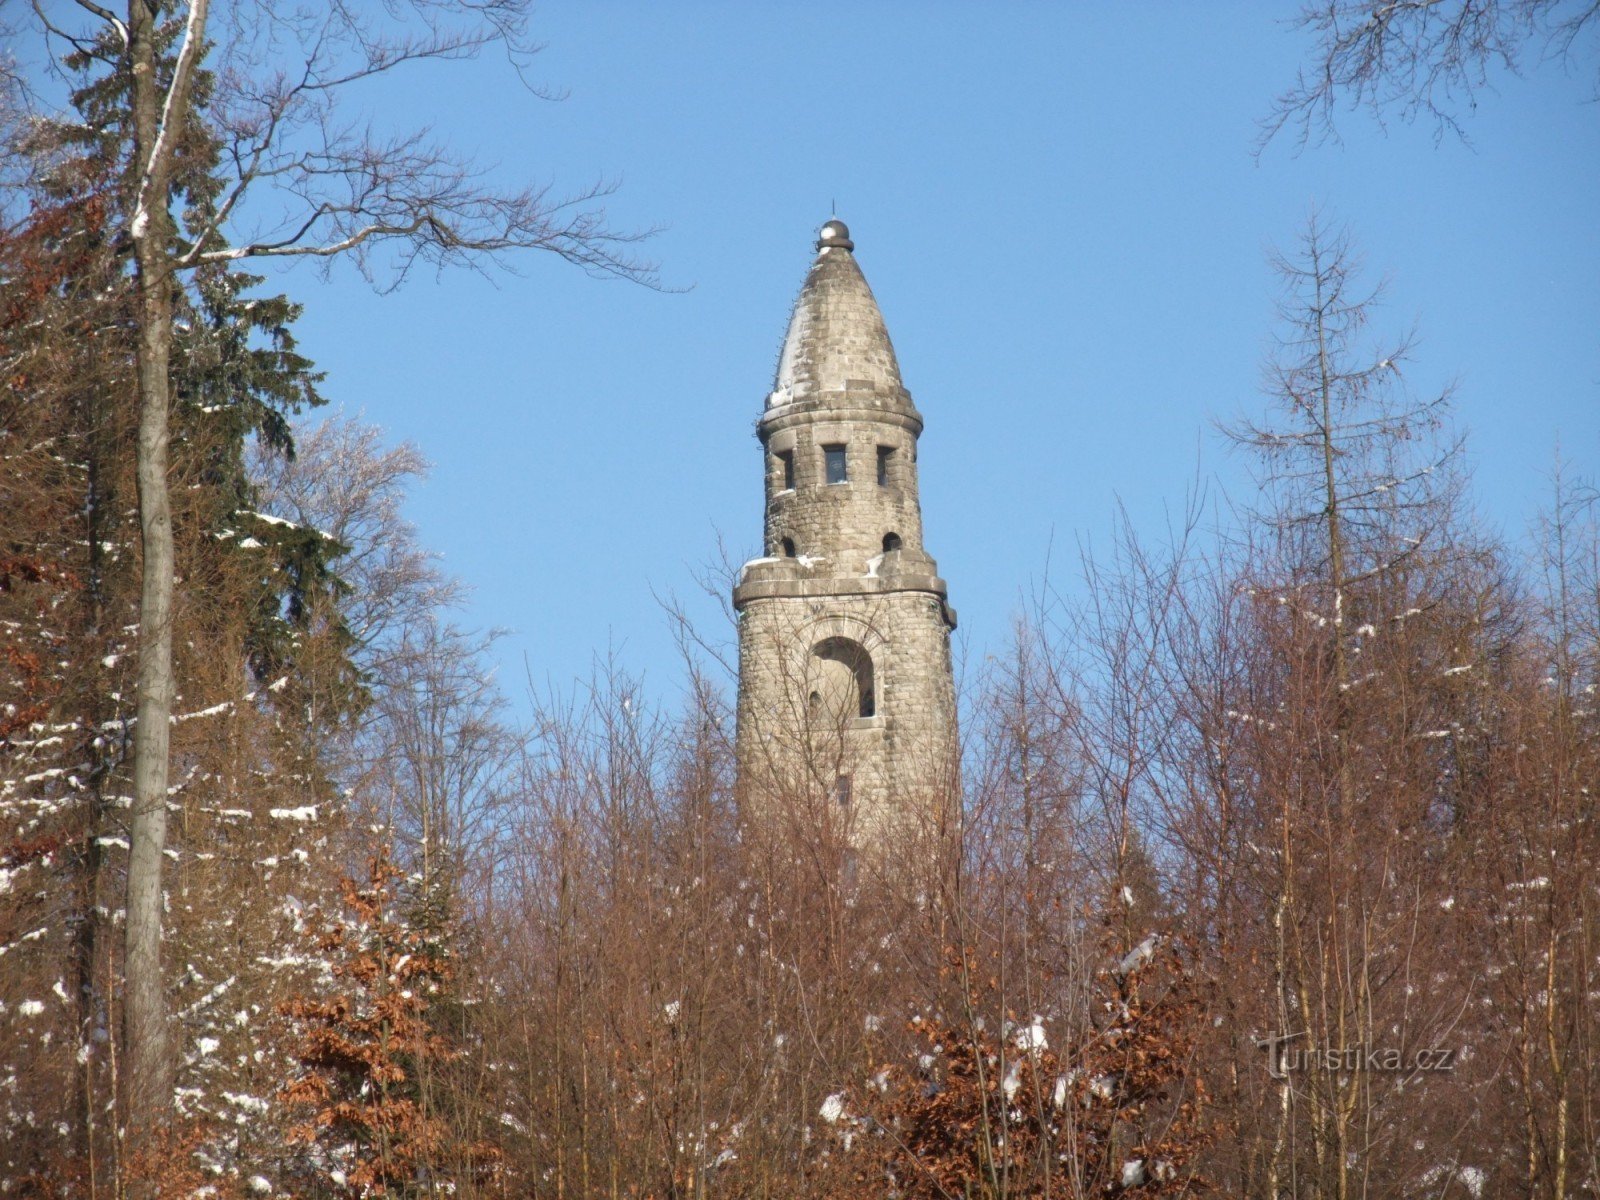 Wieża widokowa na Háji /Hainberg/ niedaleko Aš